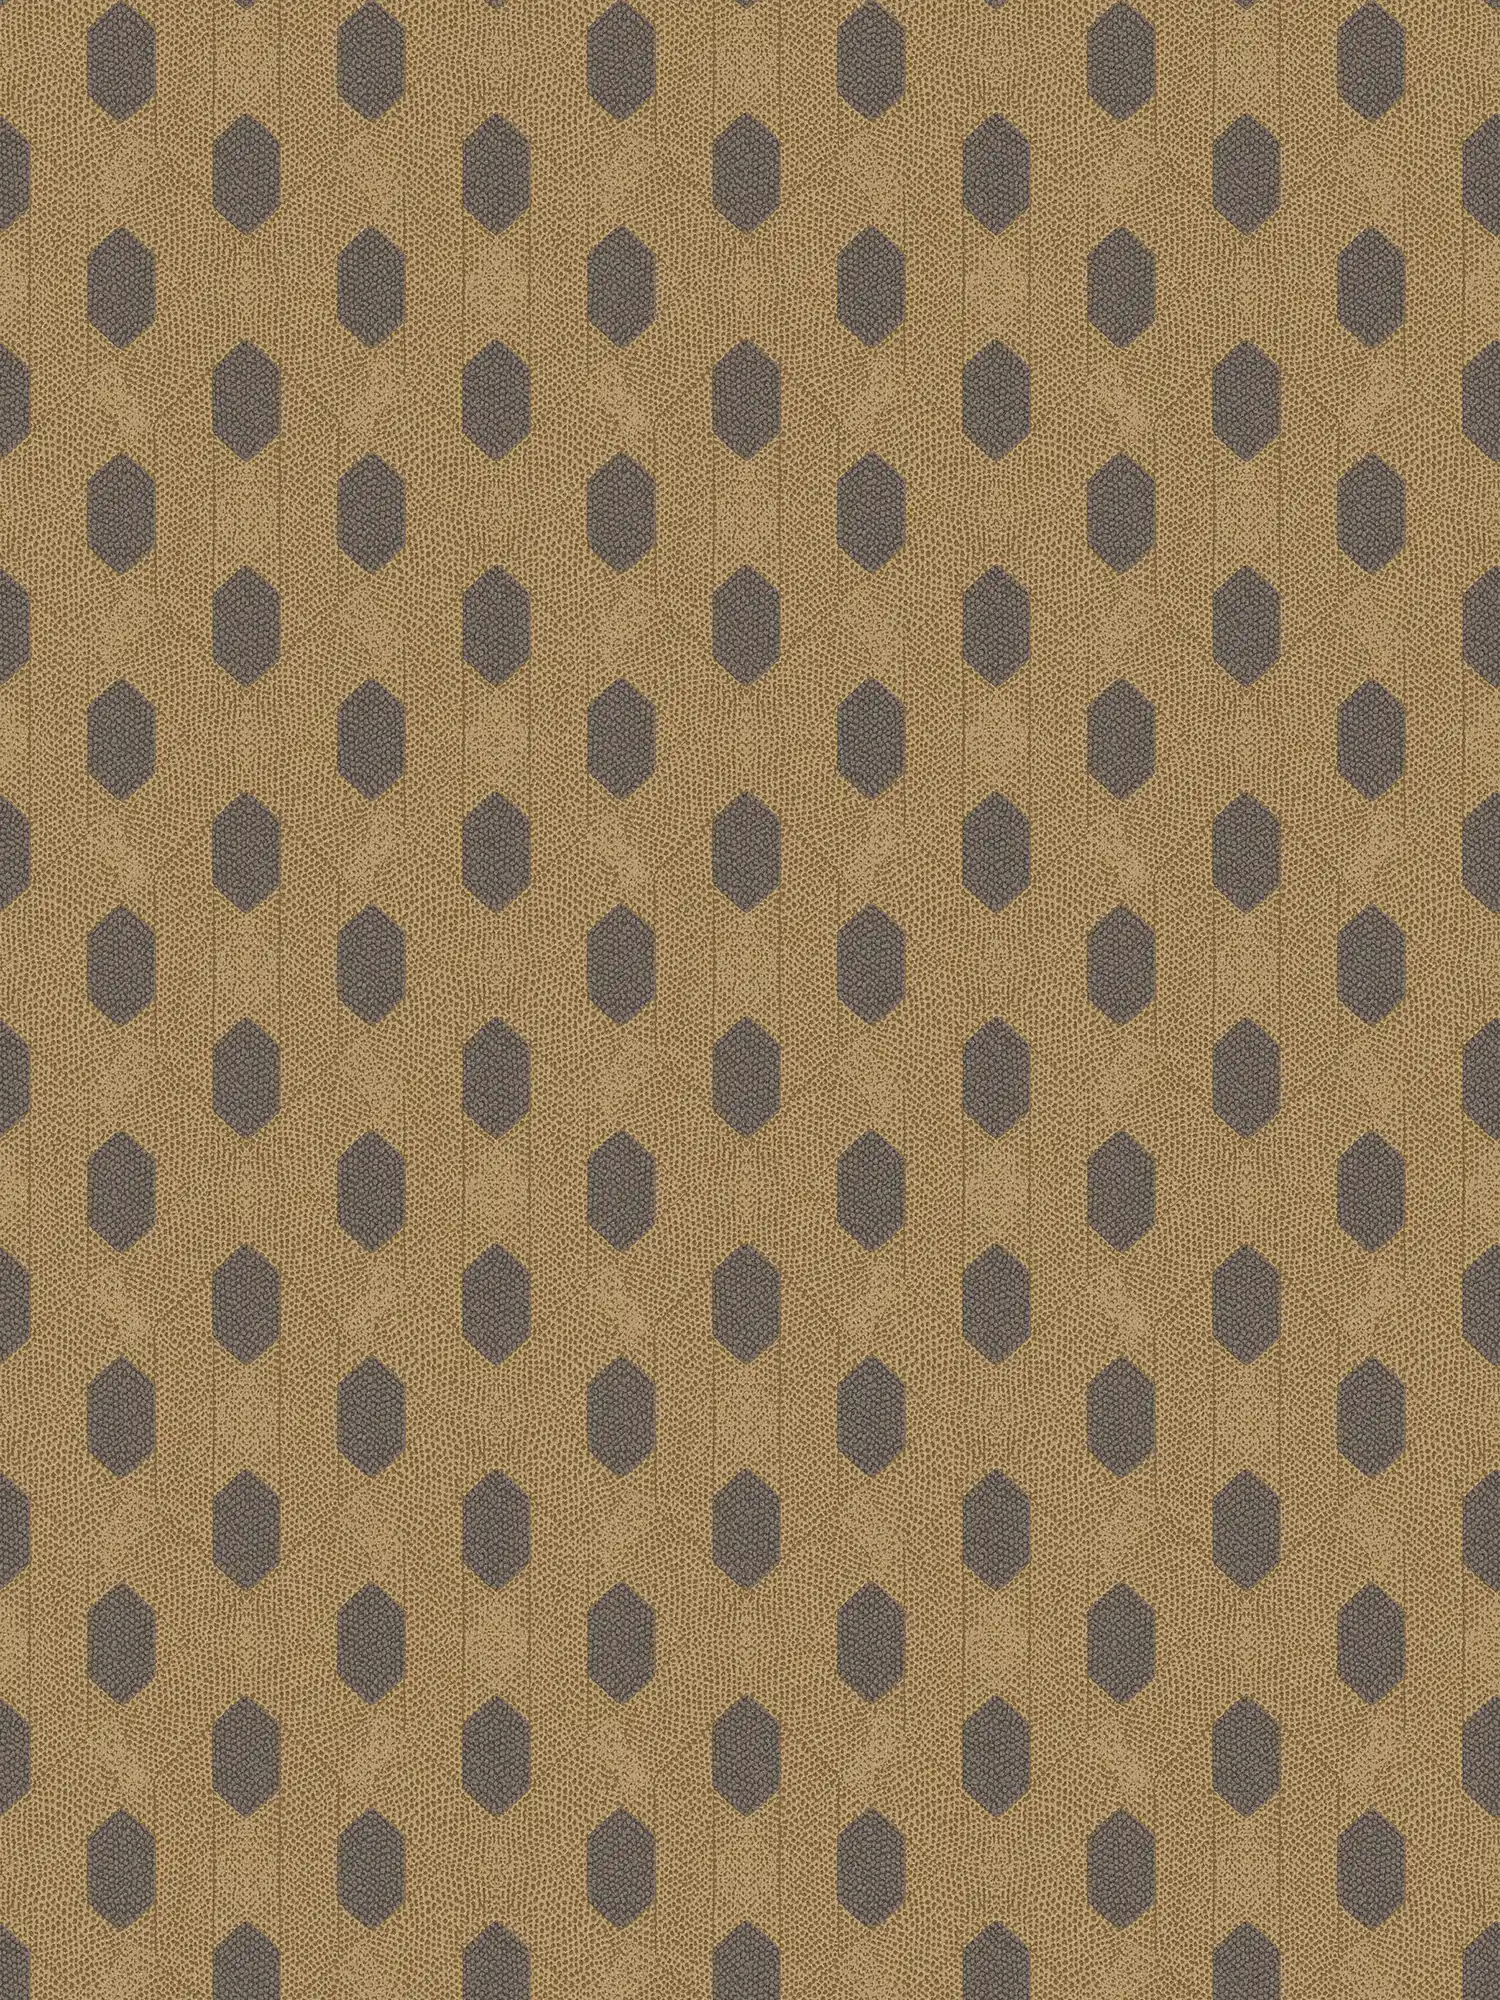 Papel pintado no tejido dorado con motivos geométricos - marrón, dorado, negro
